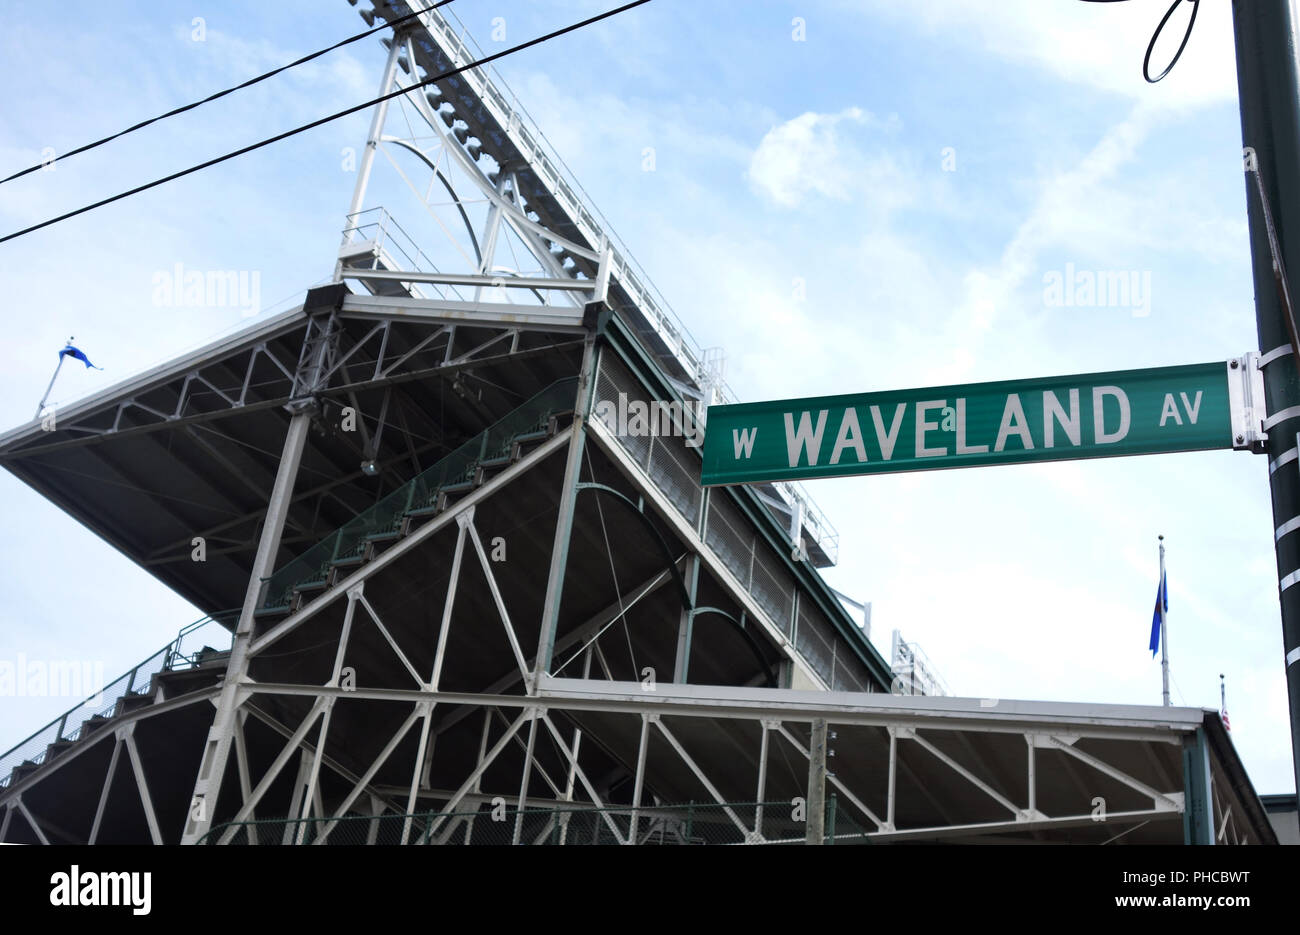 Chicago: Wrigley Field - Waveland Avenue Exterior, Wrigley …